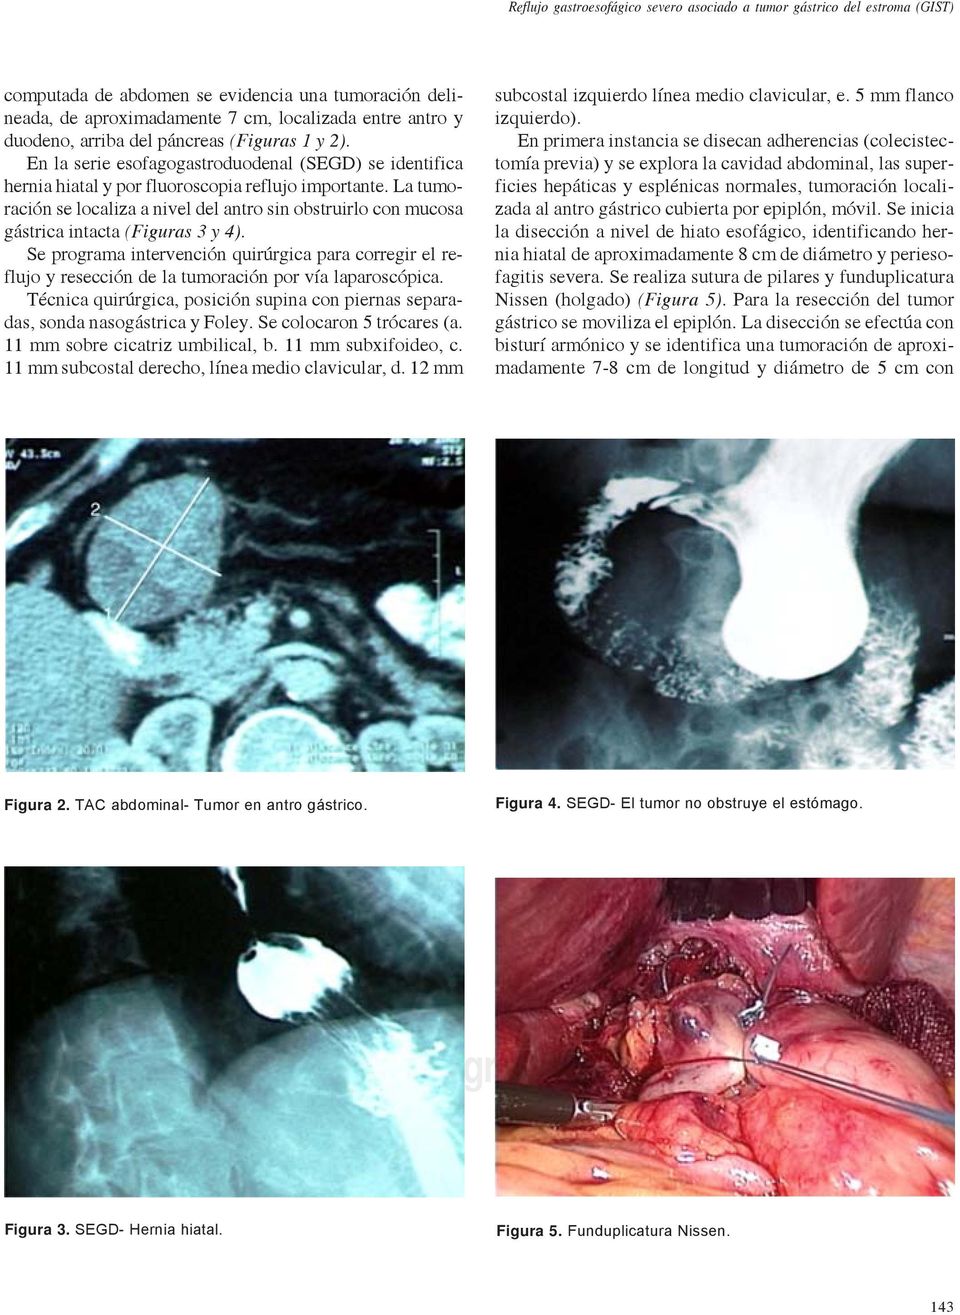 La tumoración se localiza a nivel del antro sin obstruirlo con mucosa gástrica intacta (Figuras 3 y 4).